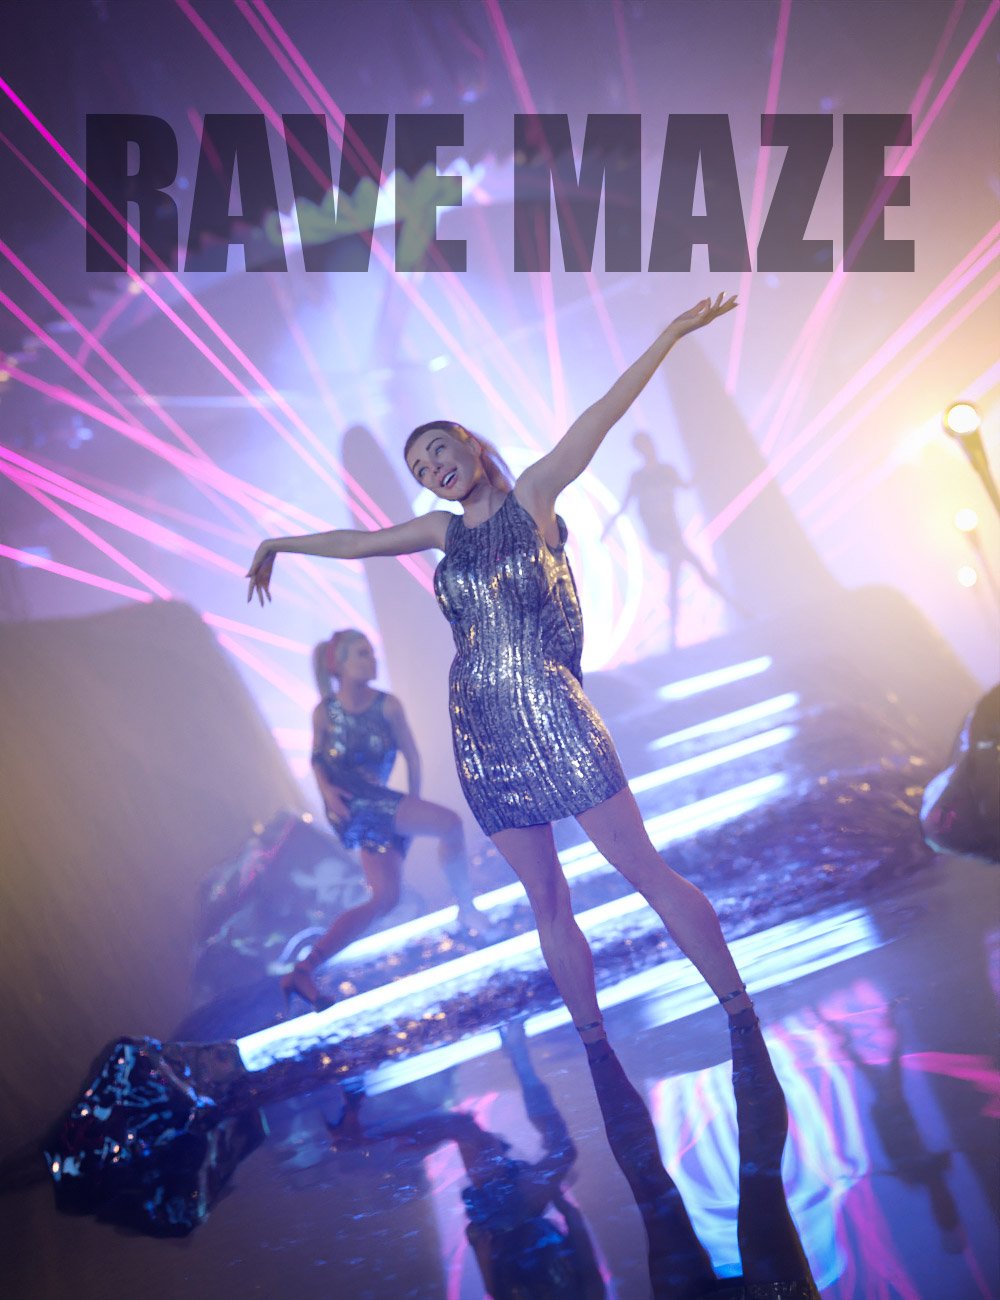 Rave Maze by: Dreamlight, 3D Models by Daz 3D